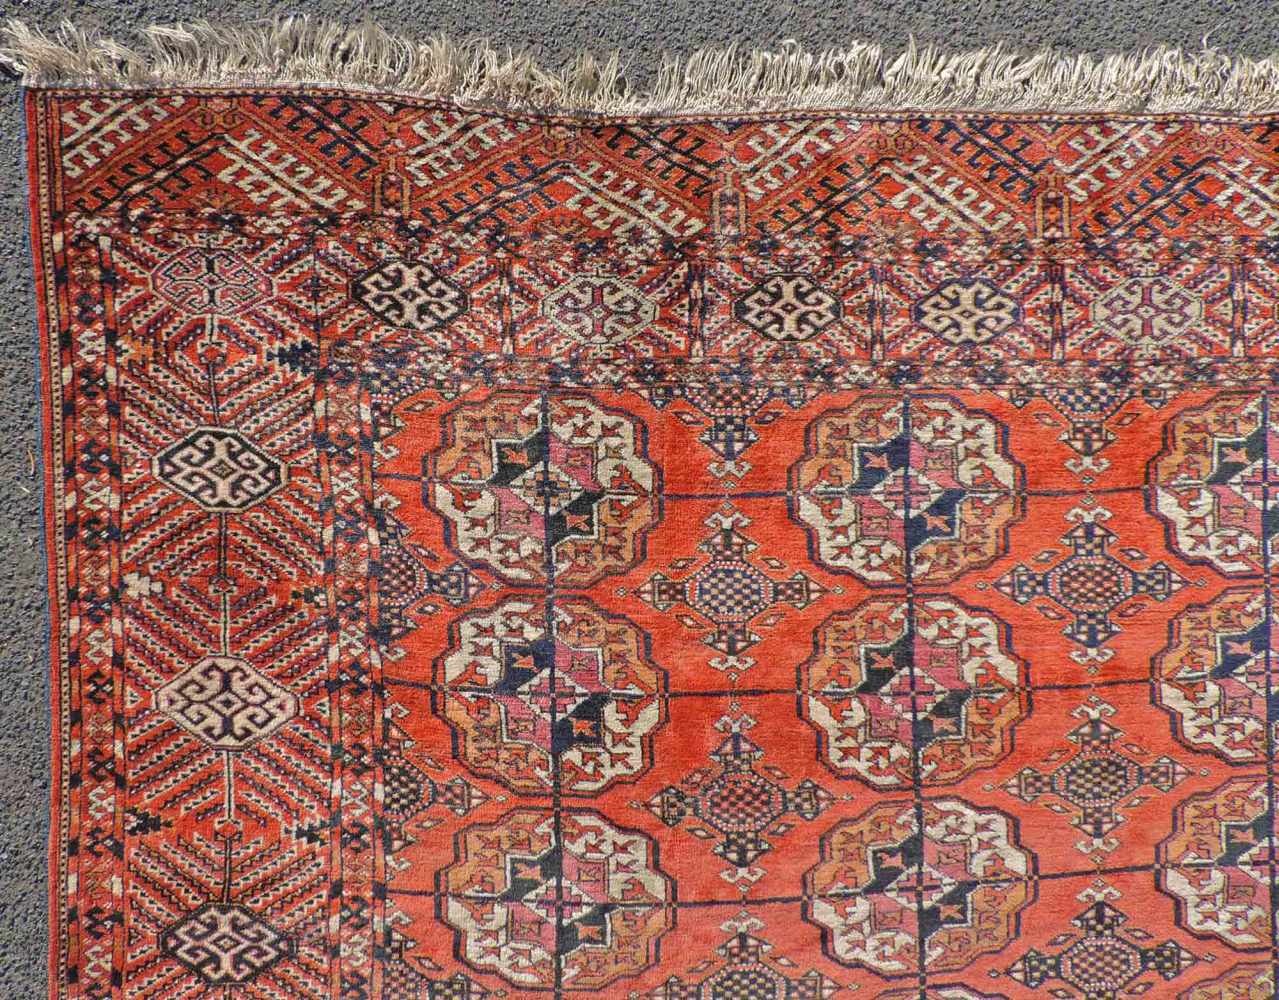 Jomud Stammesteppich. Iran. Antik, um 1910.309 cm x 210 cm. Handgeknüpft. Wolle auf Wolle. Göklan - Image 6 of 8